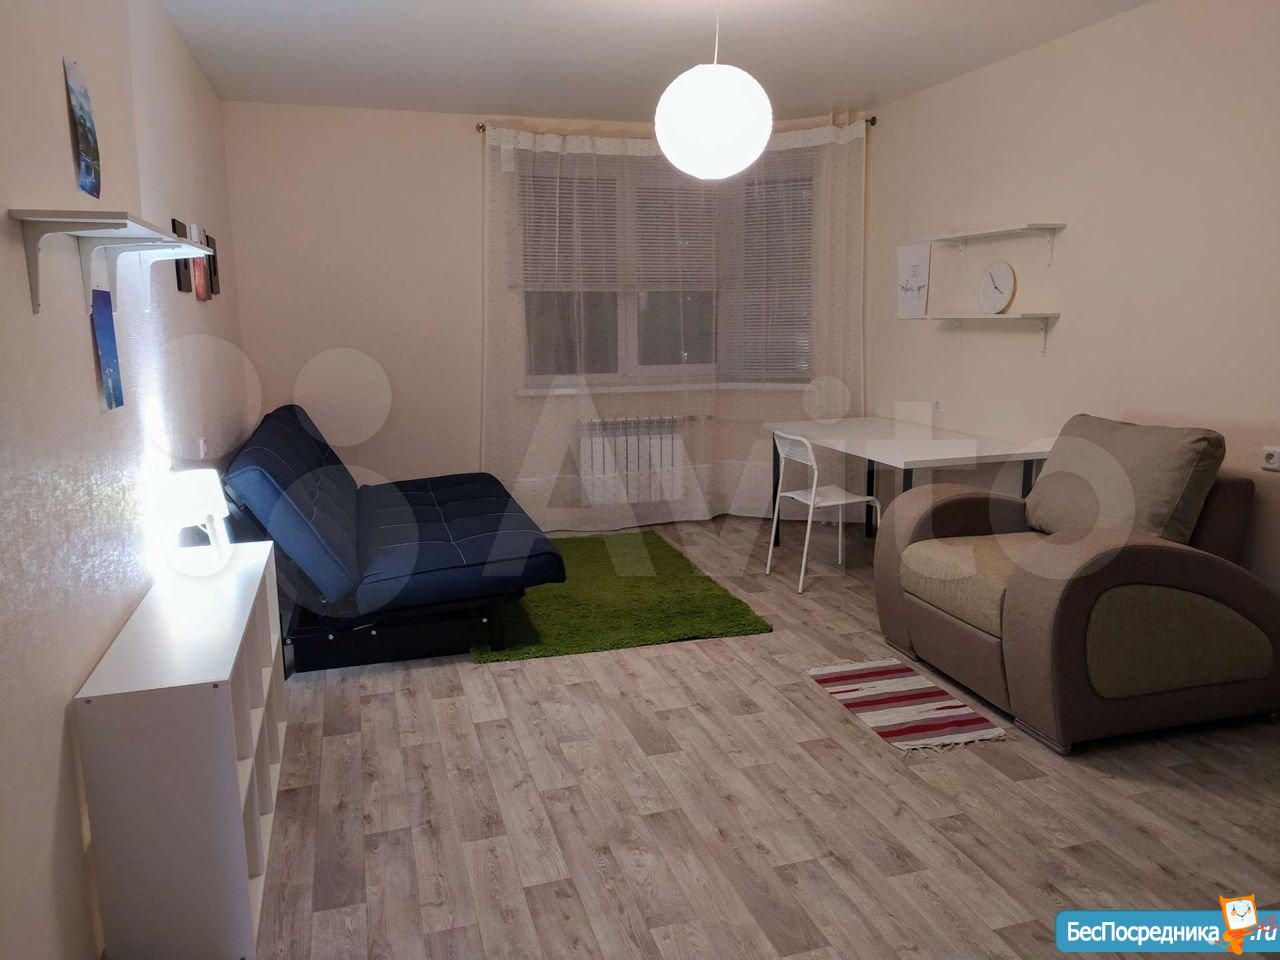 Снять однокомнатную квартиру в кинешме на длительный срок с мебелью недорого без посредников